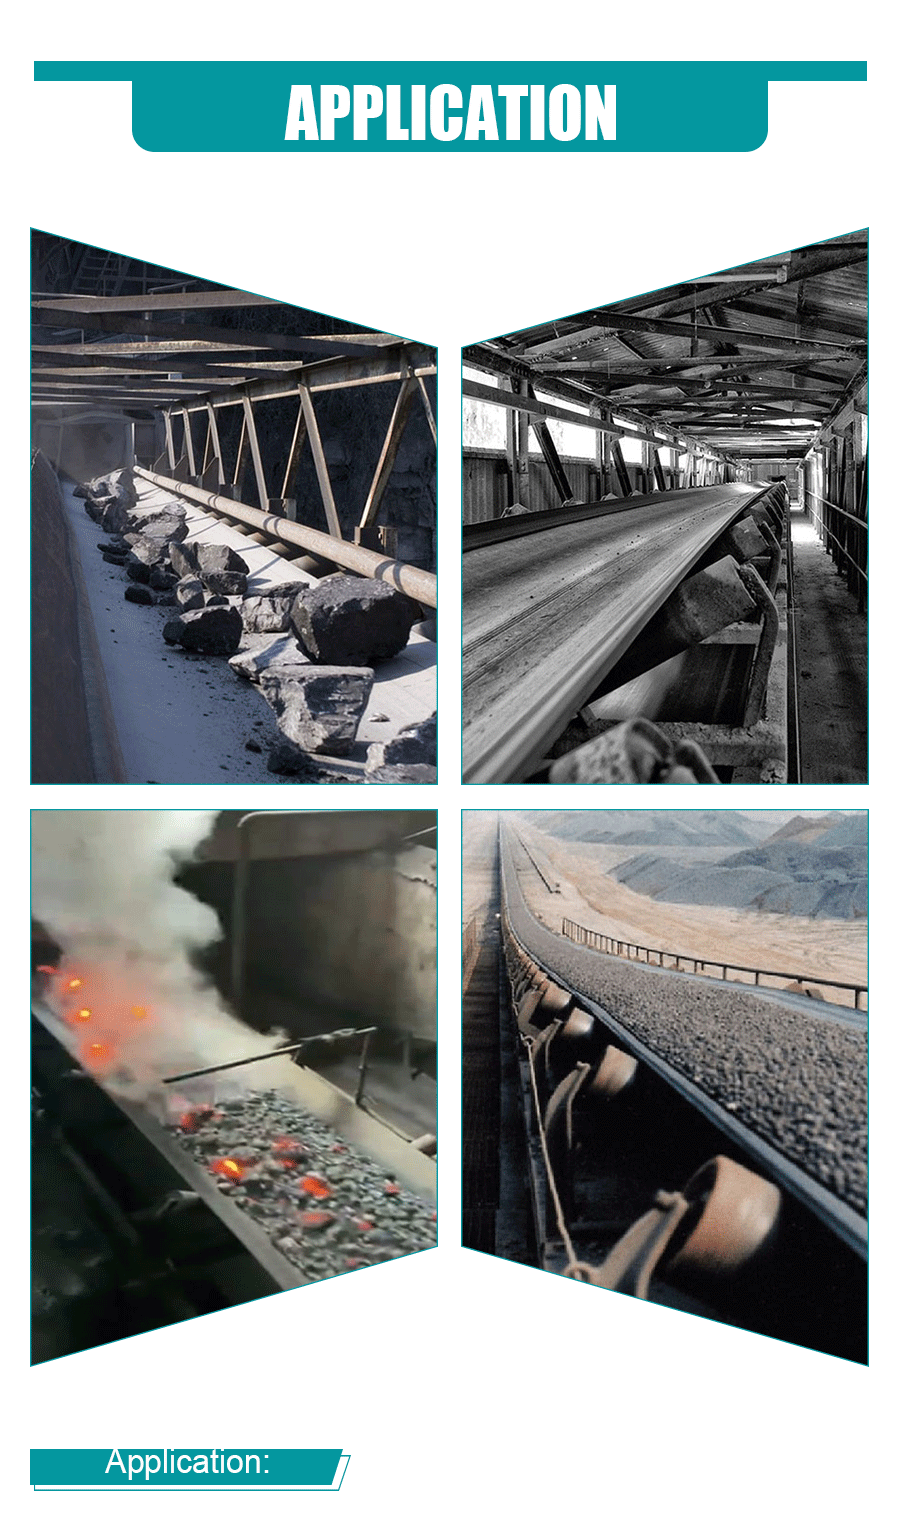 Conveyor belt for the steel industry